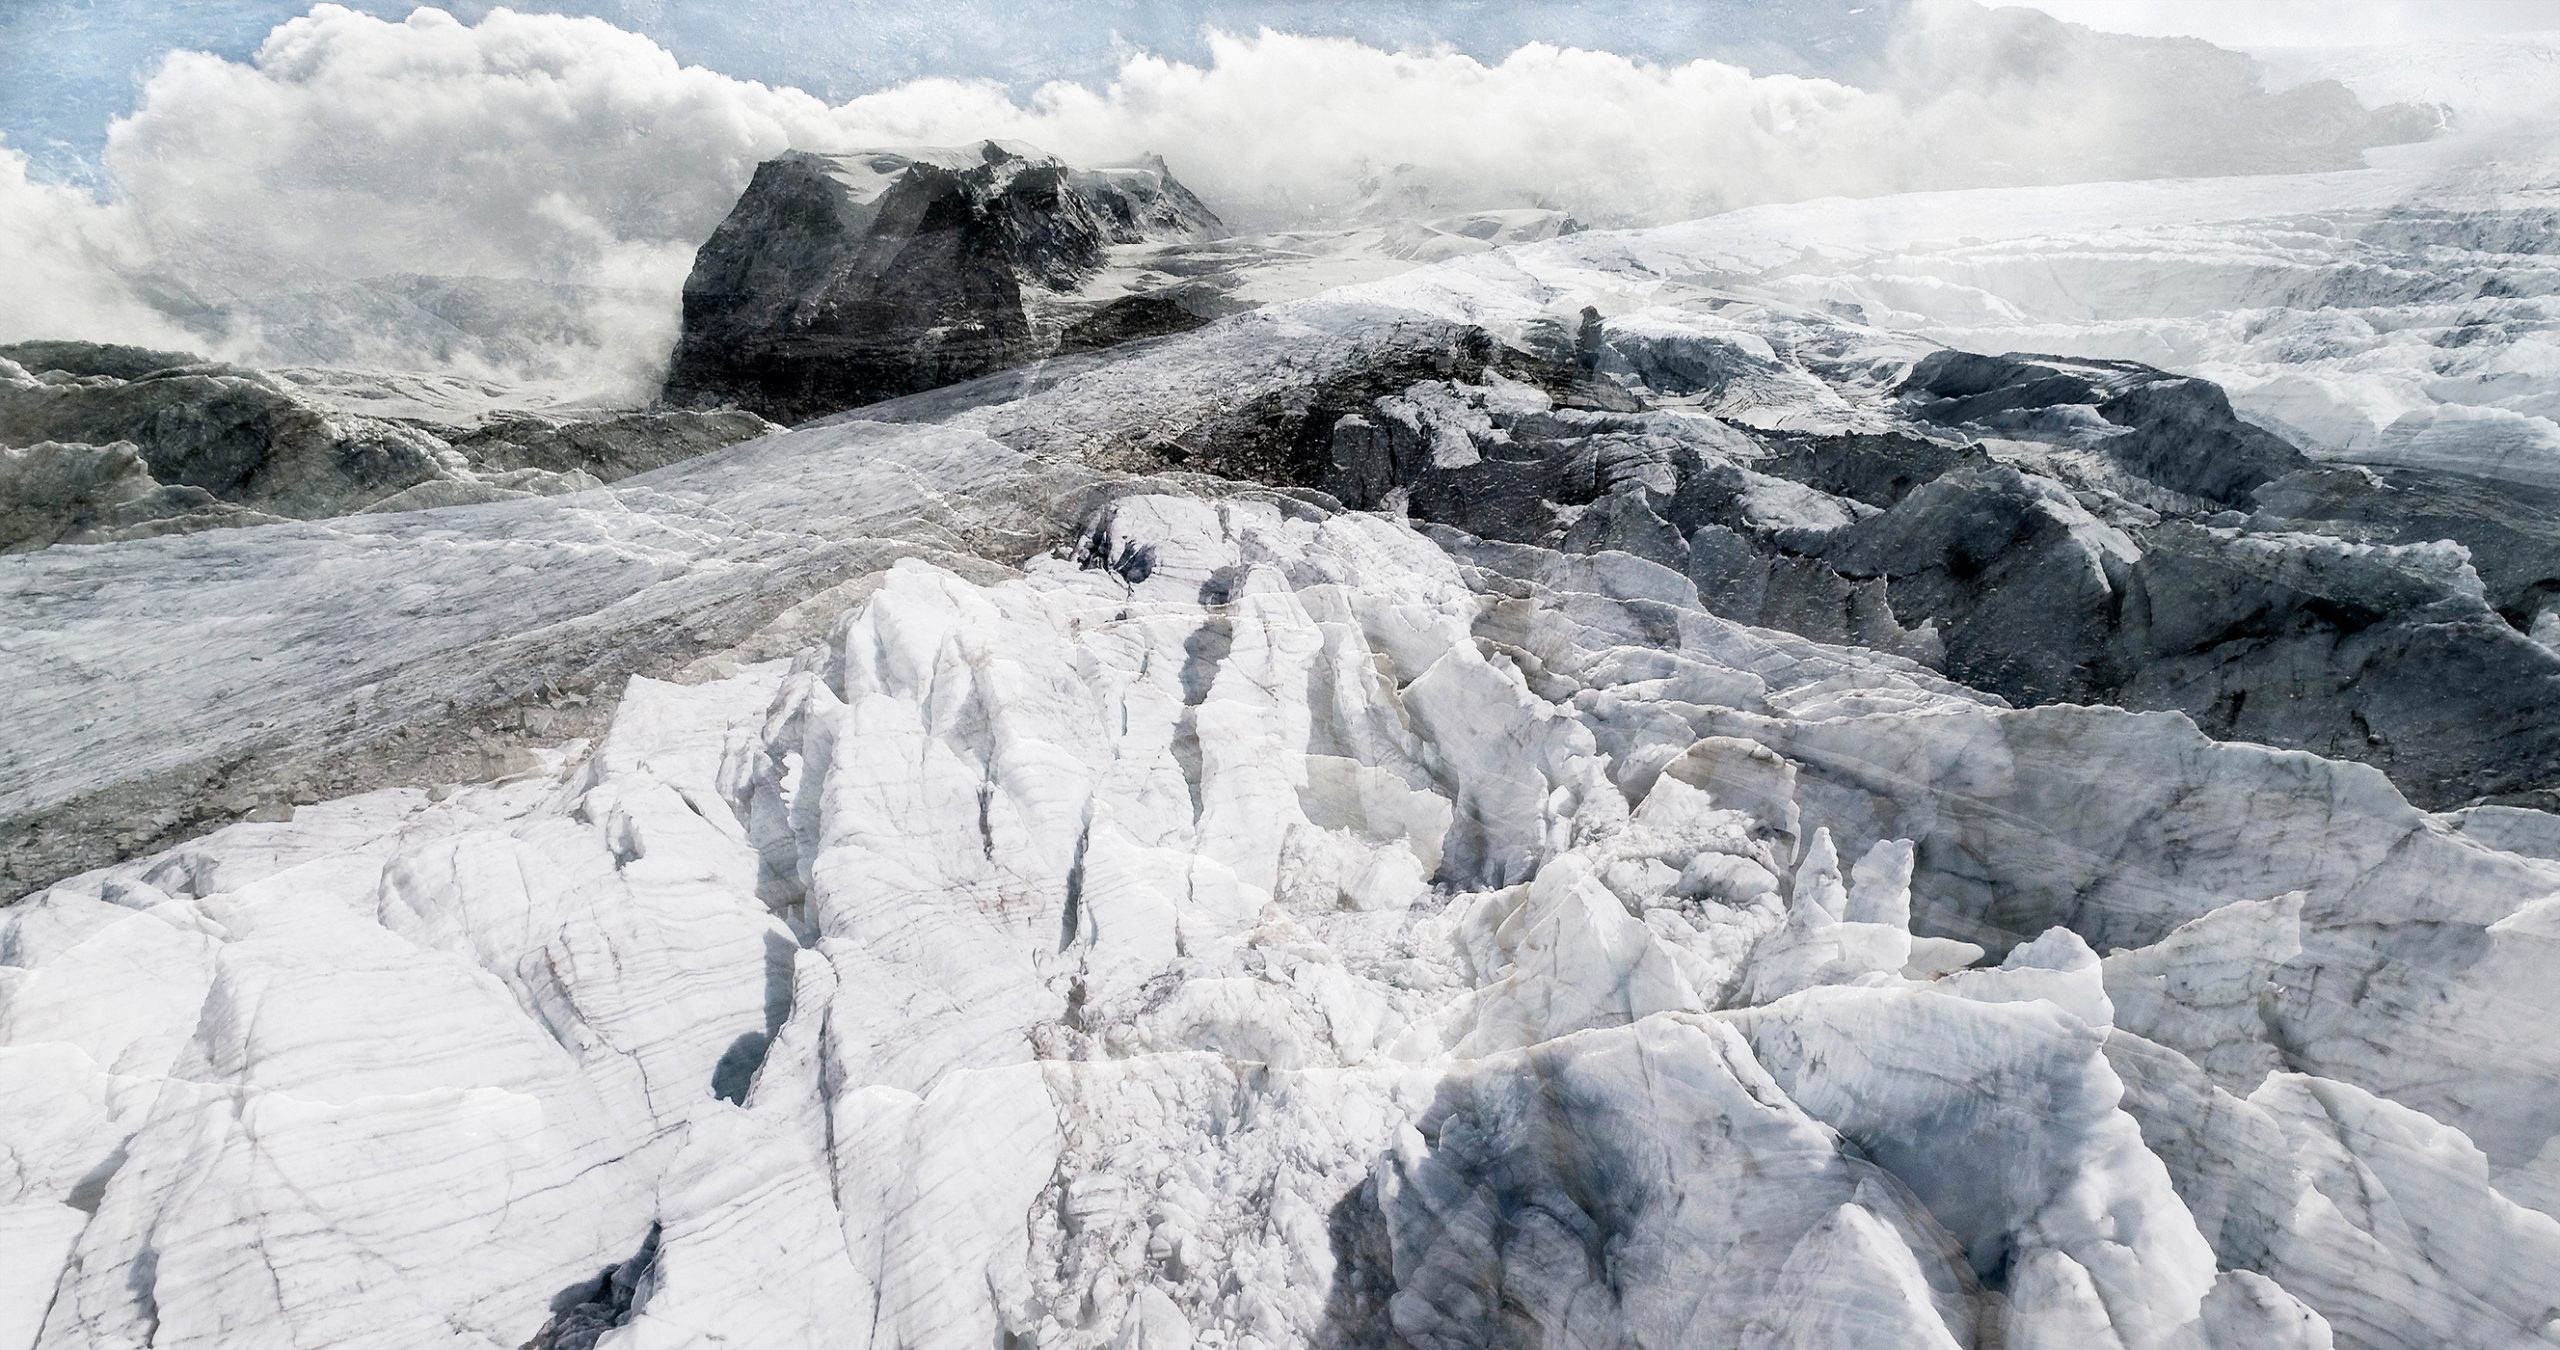   #06 Glaciers offset, 2017, photographie reconstruite à partir de bandes videos, réalisées sur le glacier Gornergletscher
